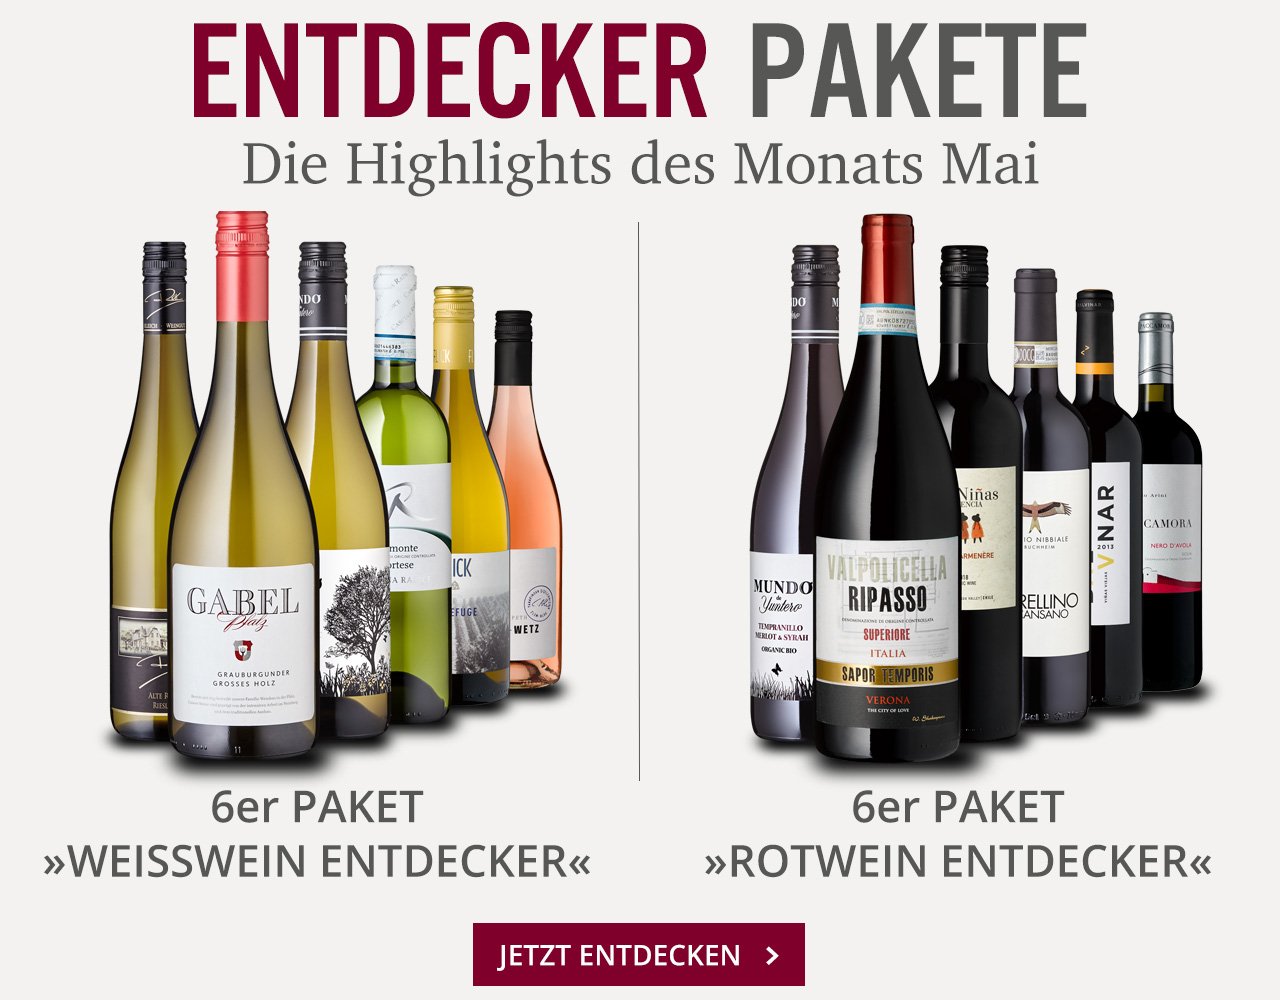 Rindchen.de: Ihre Mai-Highlights mit 30% Rabatt im Entdecker Paket | Milled